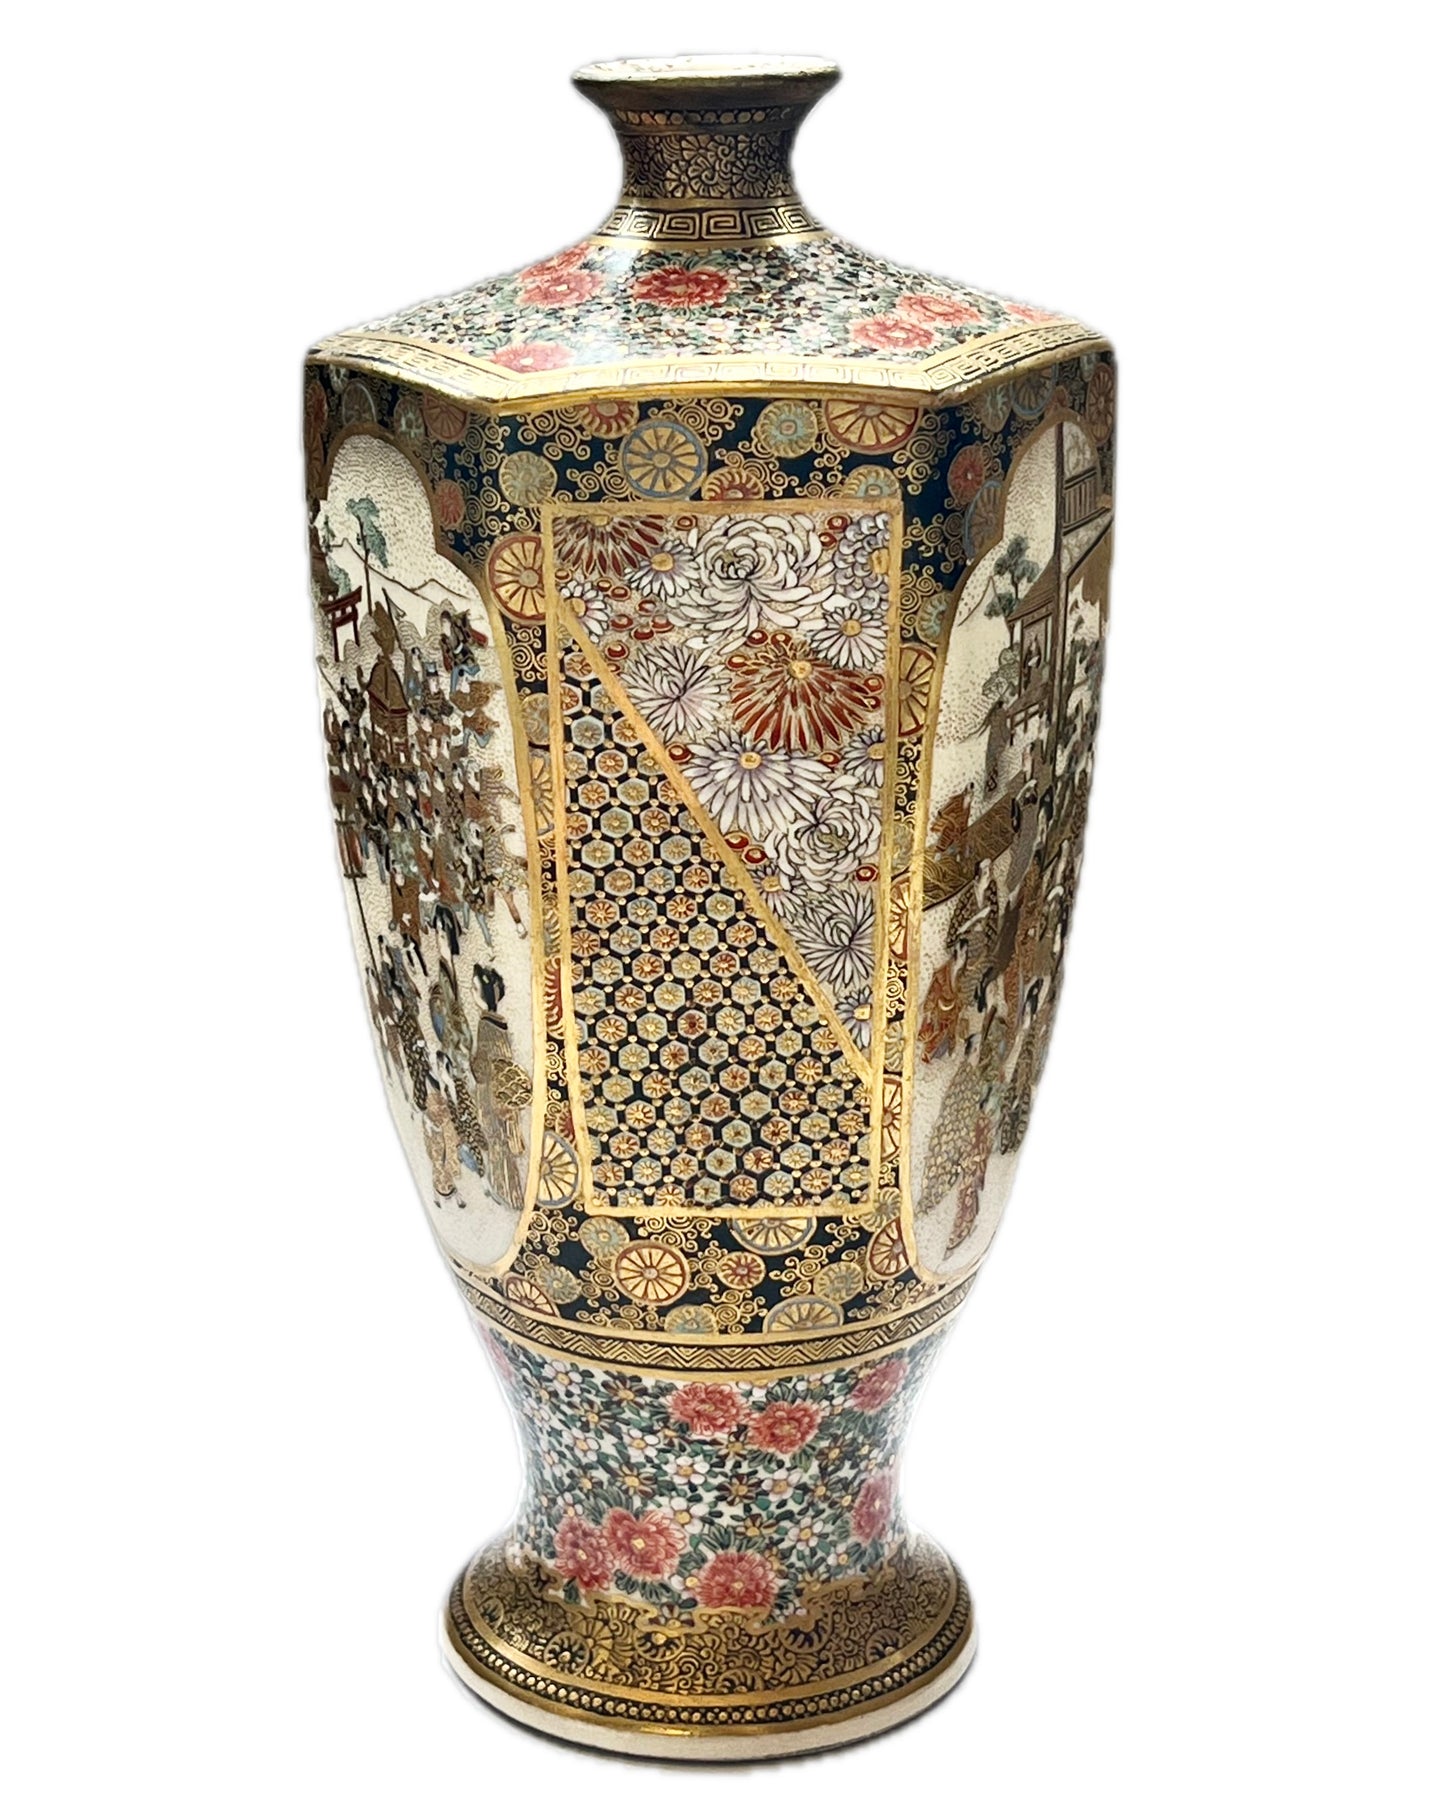 日本明治时期古董萨摩六角花瓶，由 Kozan 制作，约 19 世纪中后期（19 世纪 60 年代至 19 世纪 90 年代）